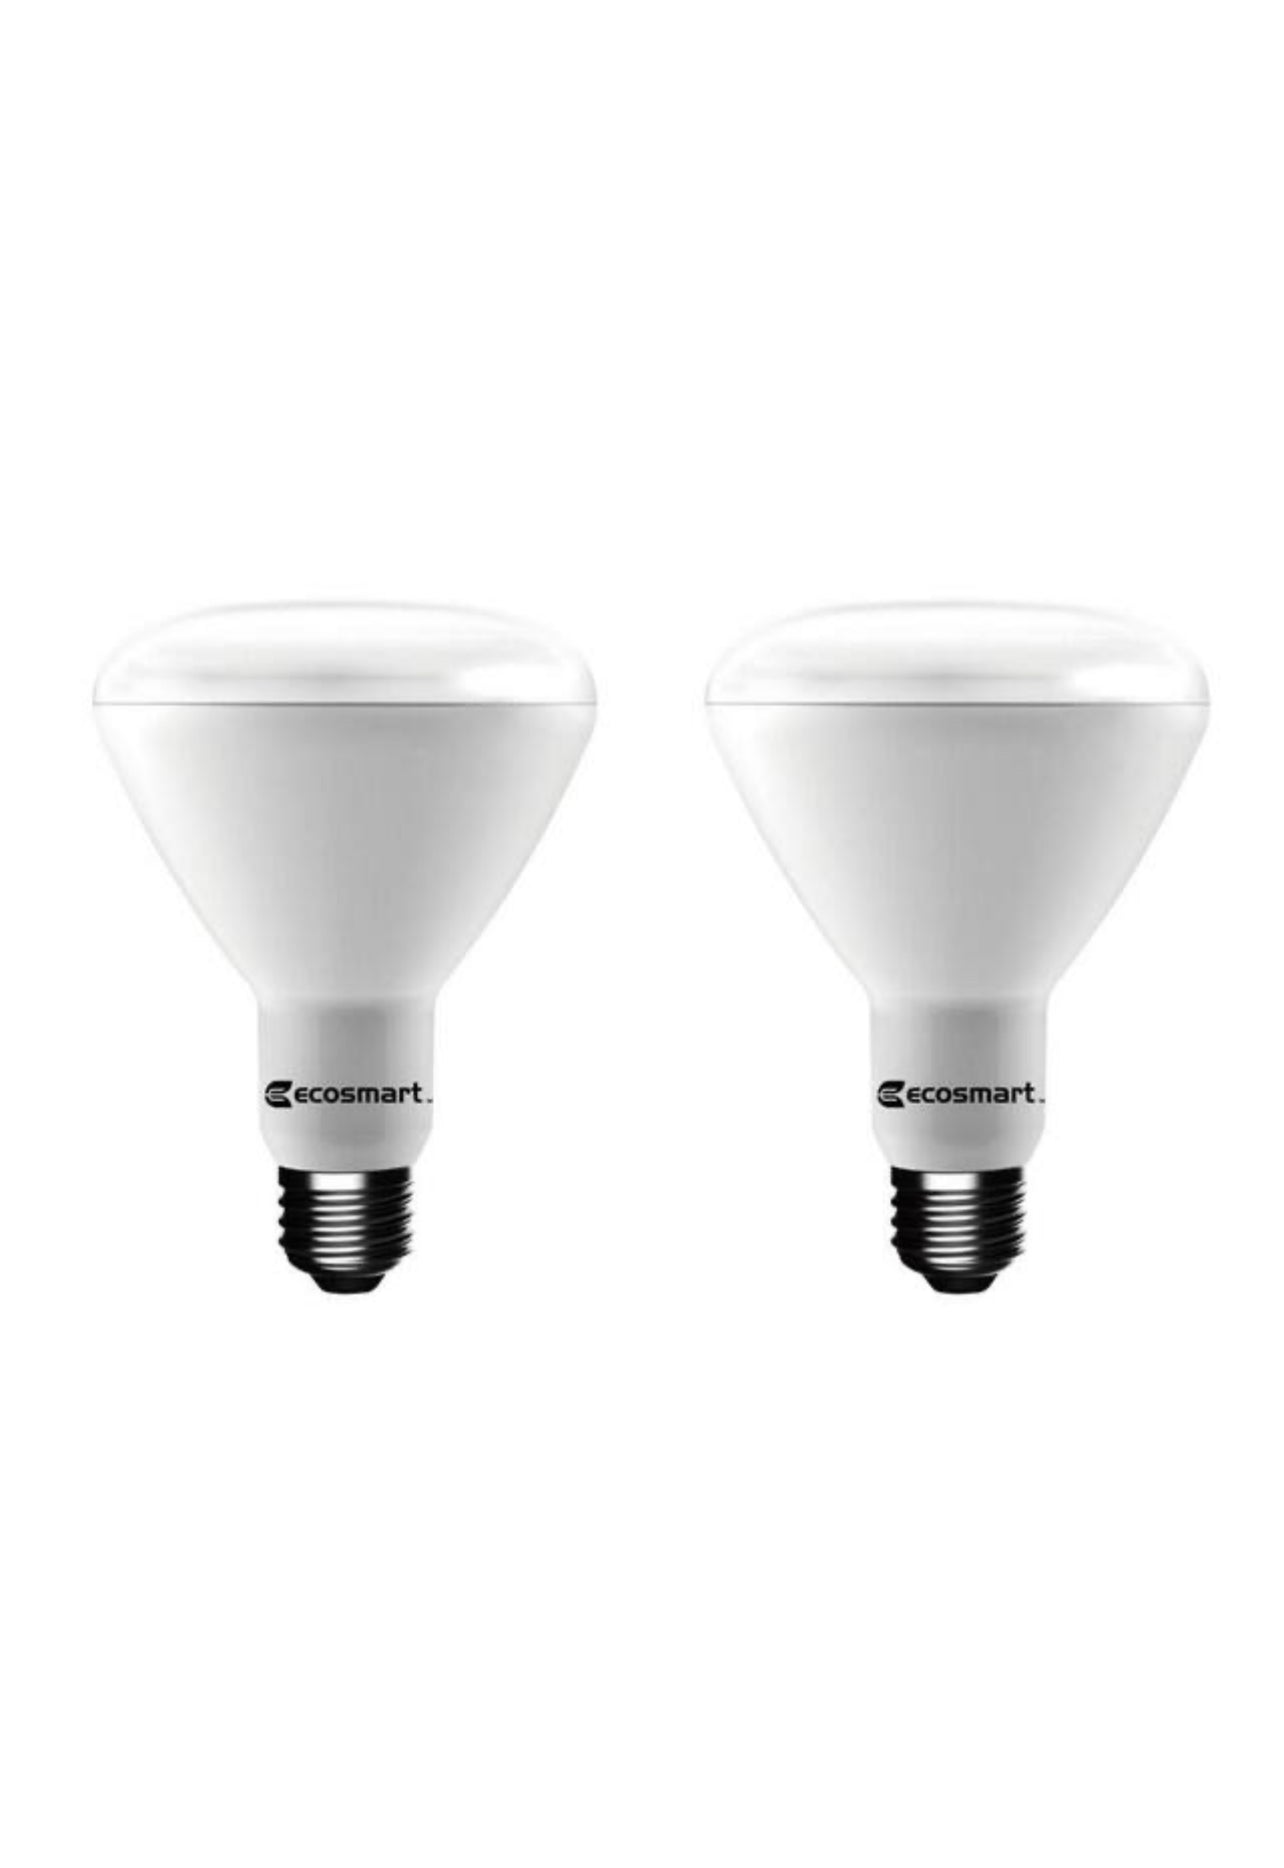 Ecosmart 75 Watt Equivalent BR30 Dimmable Energy Star LED Light Bulb Soft White (2-Pack) Damaged Box